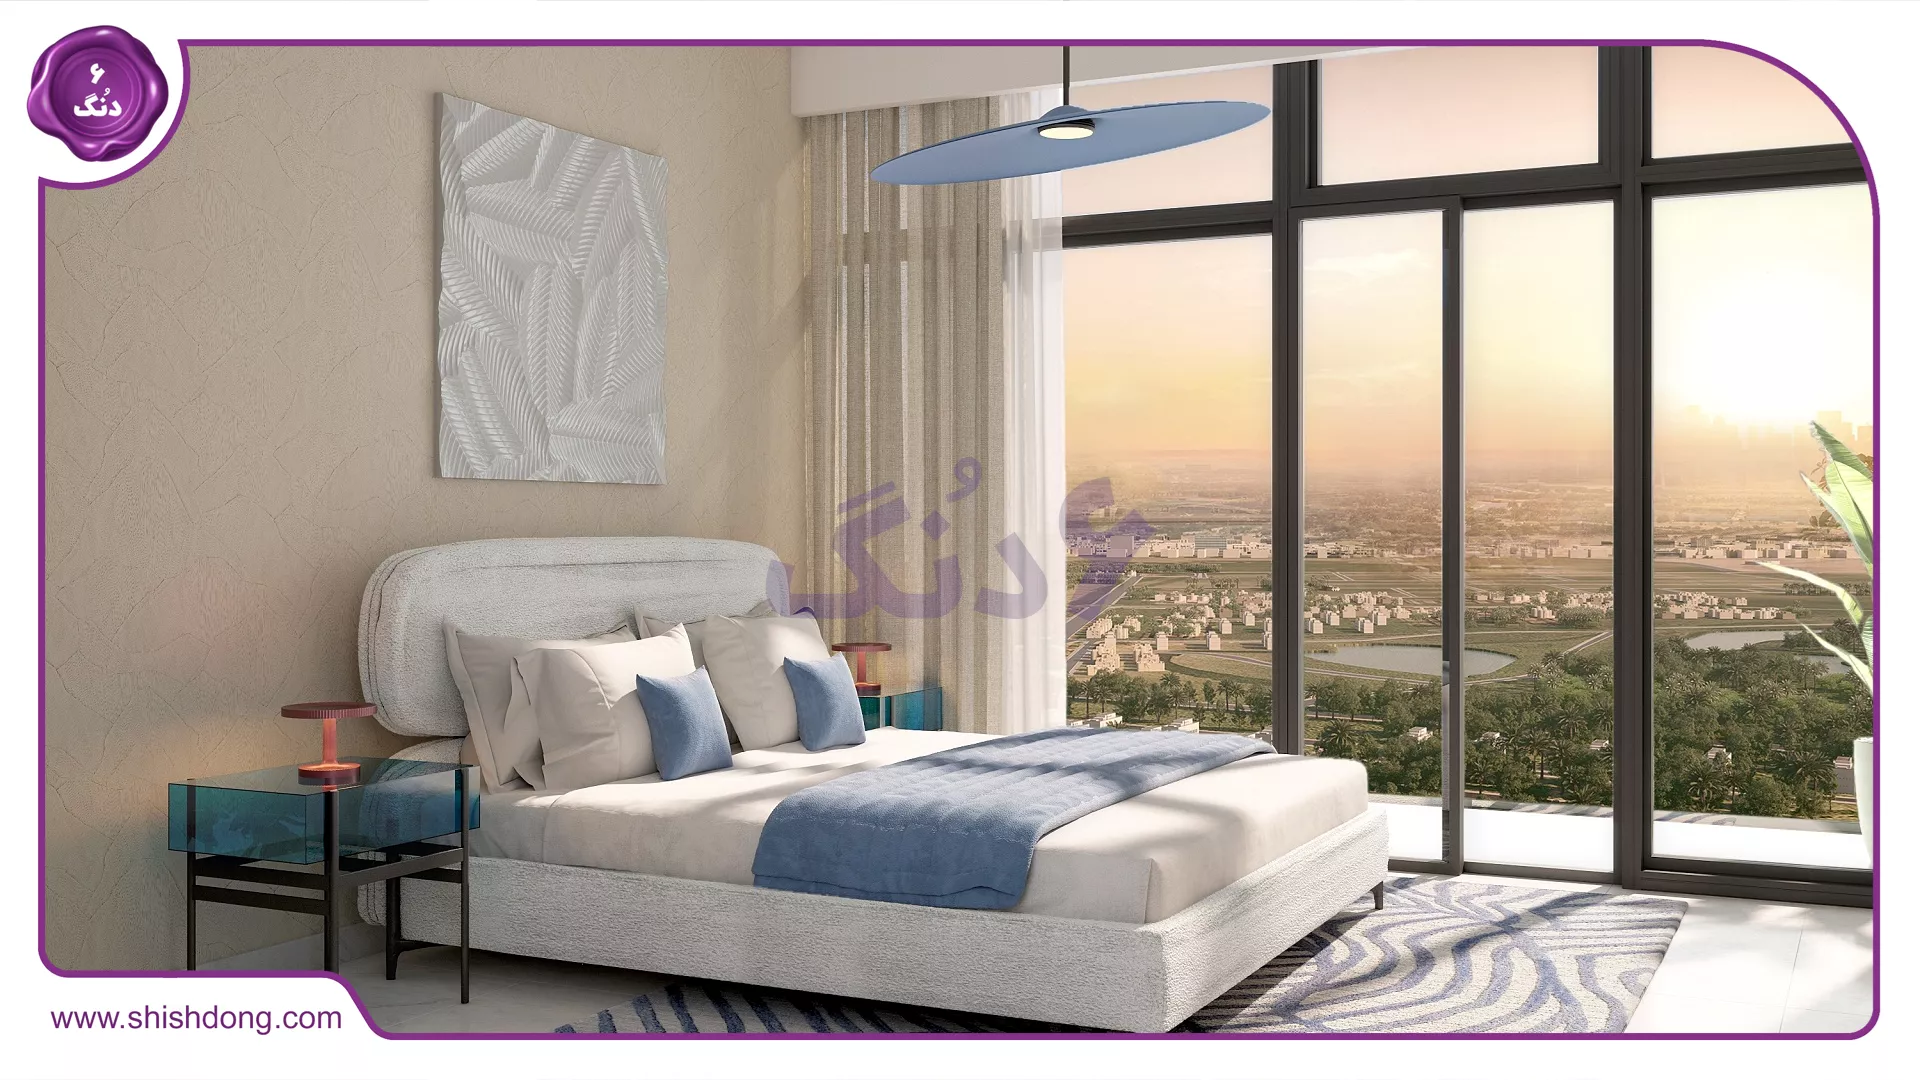 نمای از اتاق خواب های برج گرند اسپرت سیتی دبی 